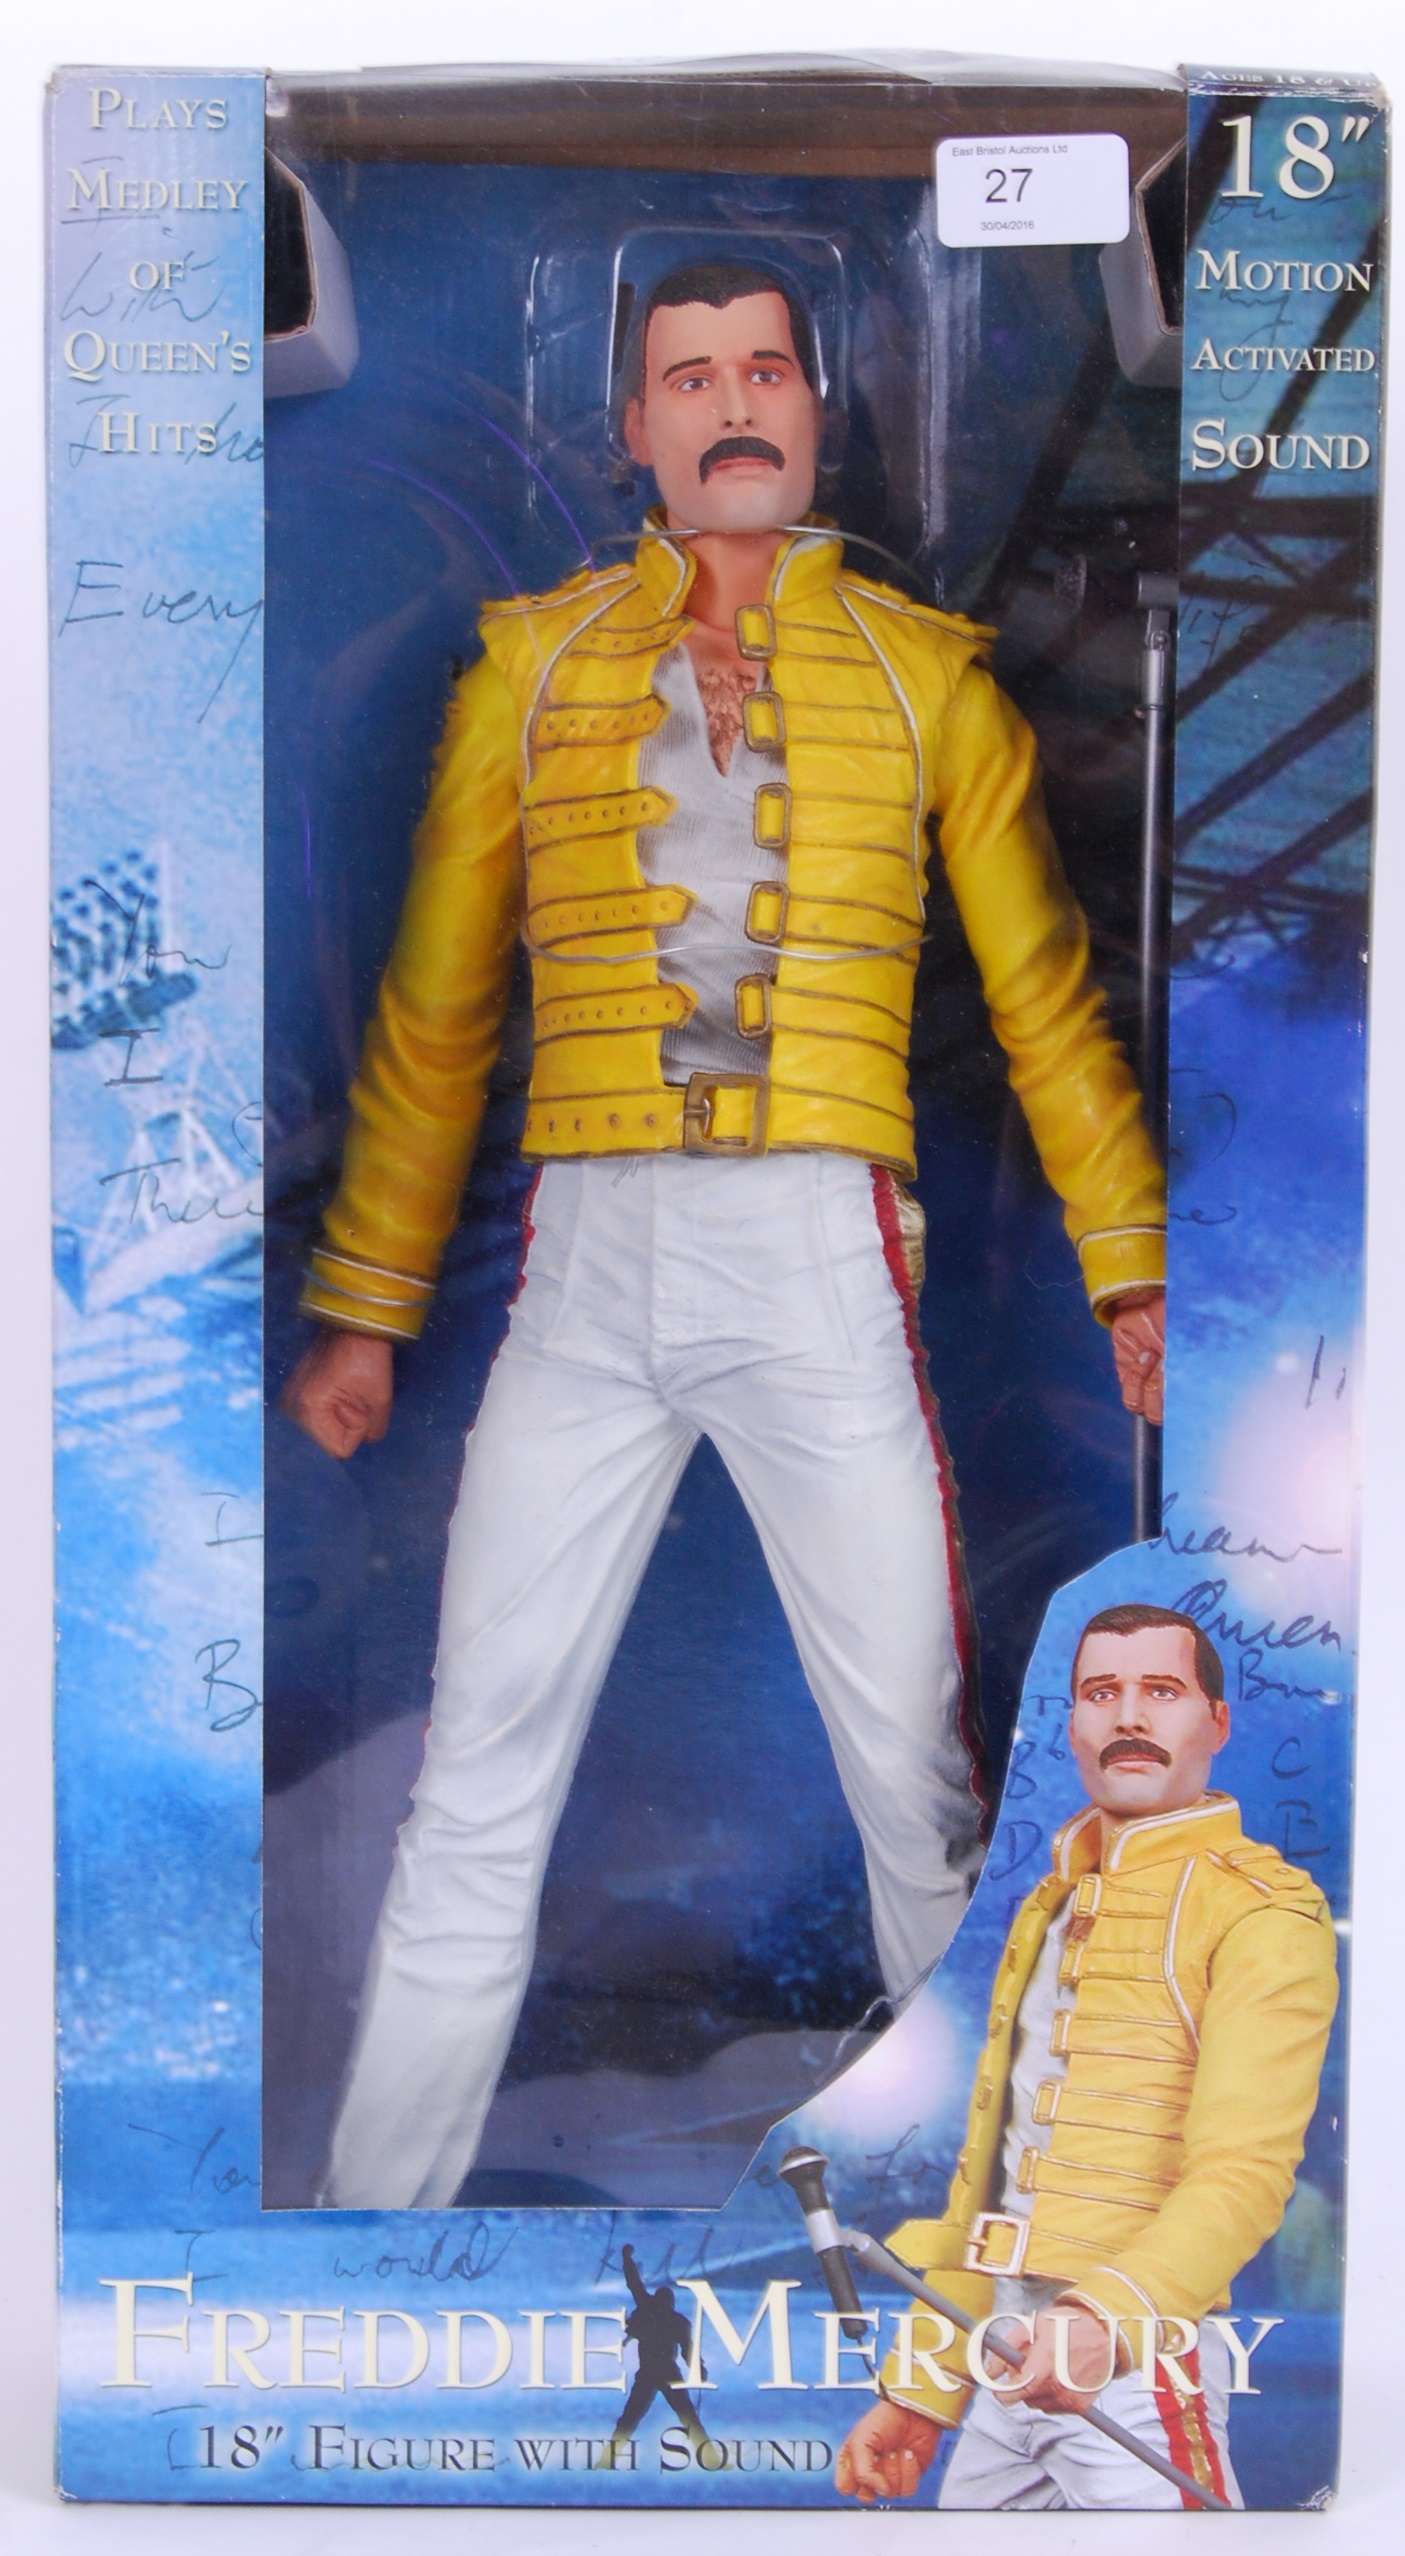 FREDDIE MERCURY: A large 18" action figure statue of Queen singer Freddie Mercury.